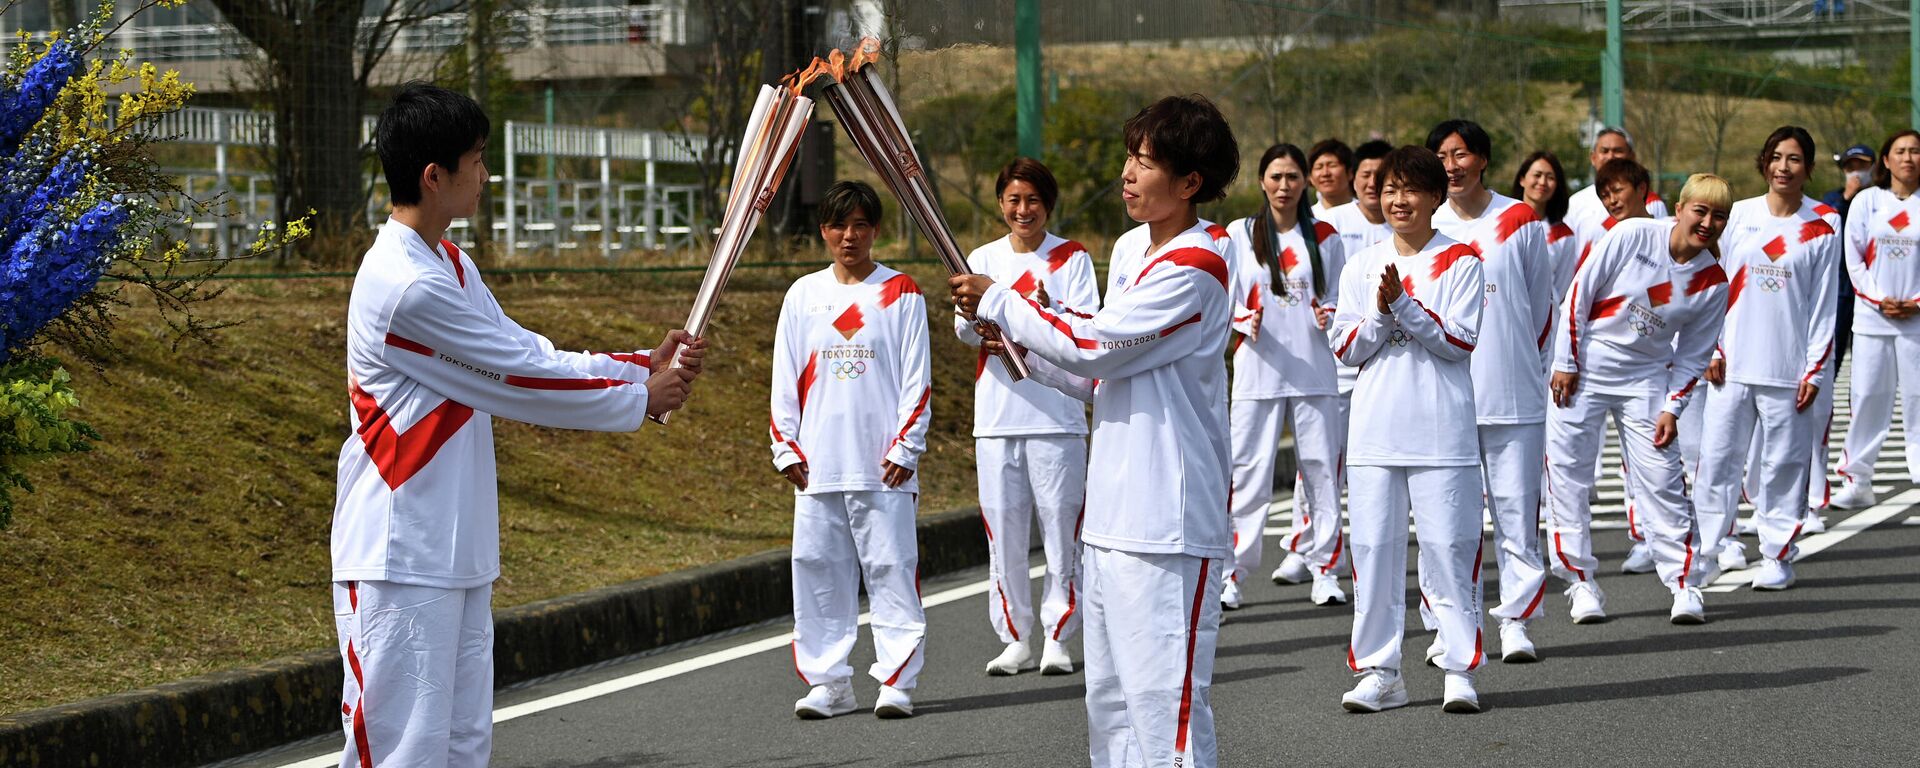 La ceremonia de relevo de la antorcha olímpica en Japón - Sputnik Mundo, 1920, 25.03.2021